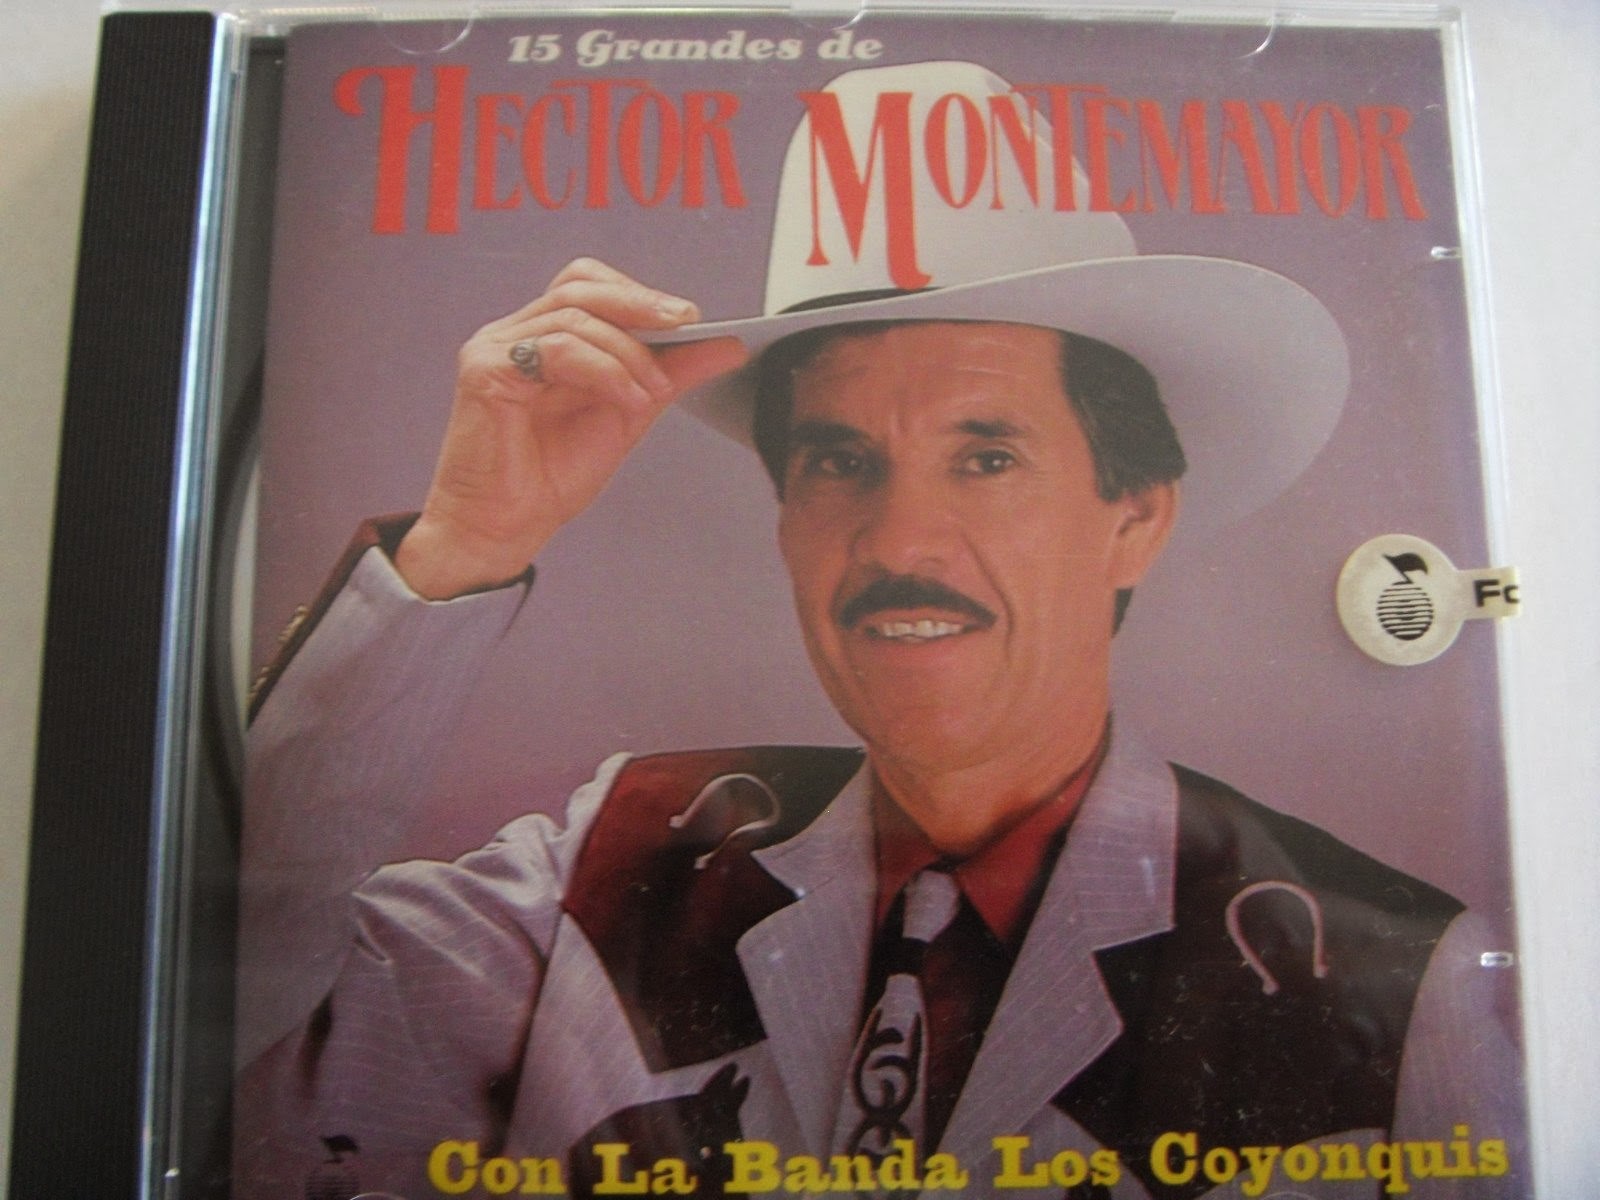 Hecotro Montemayot - Con la Banda los Coyonquis